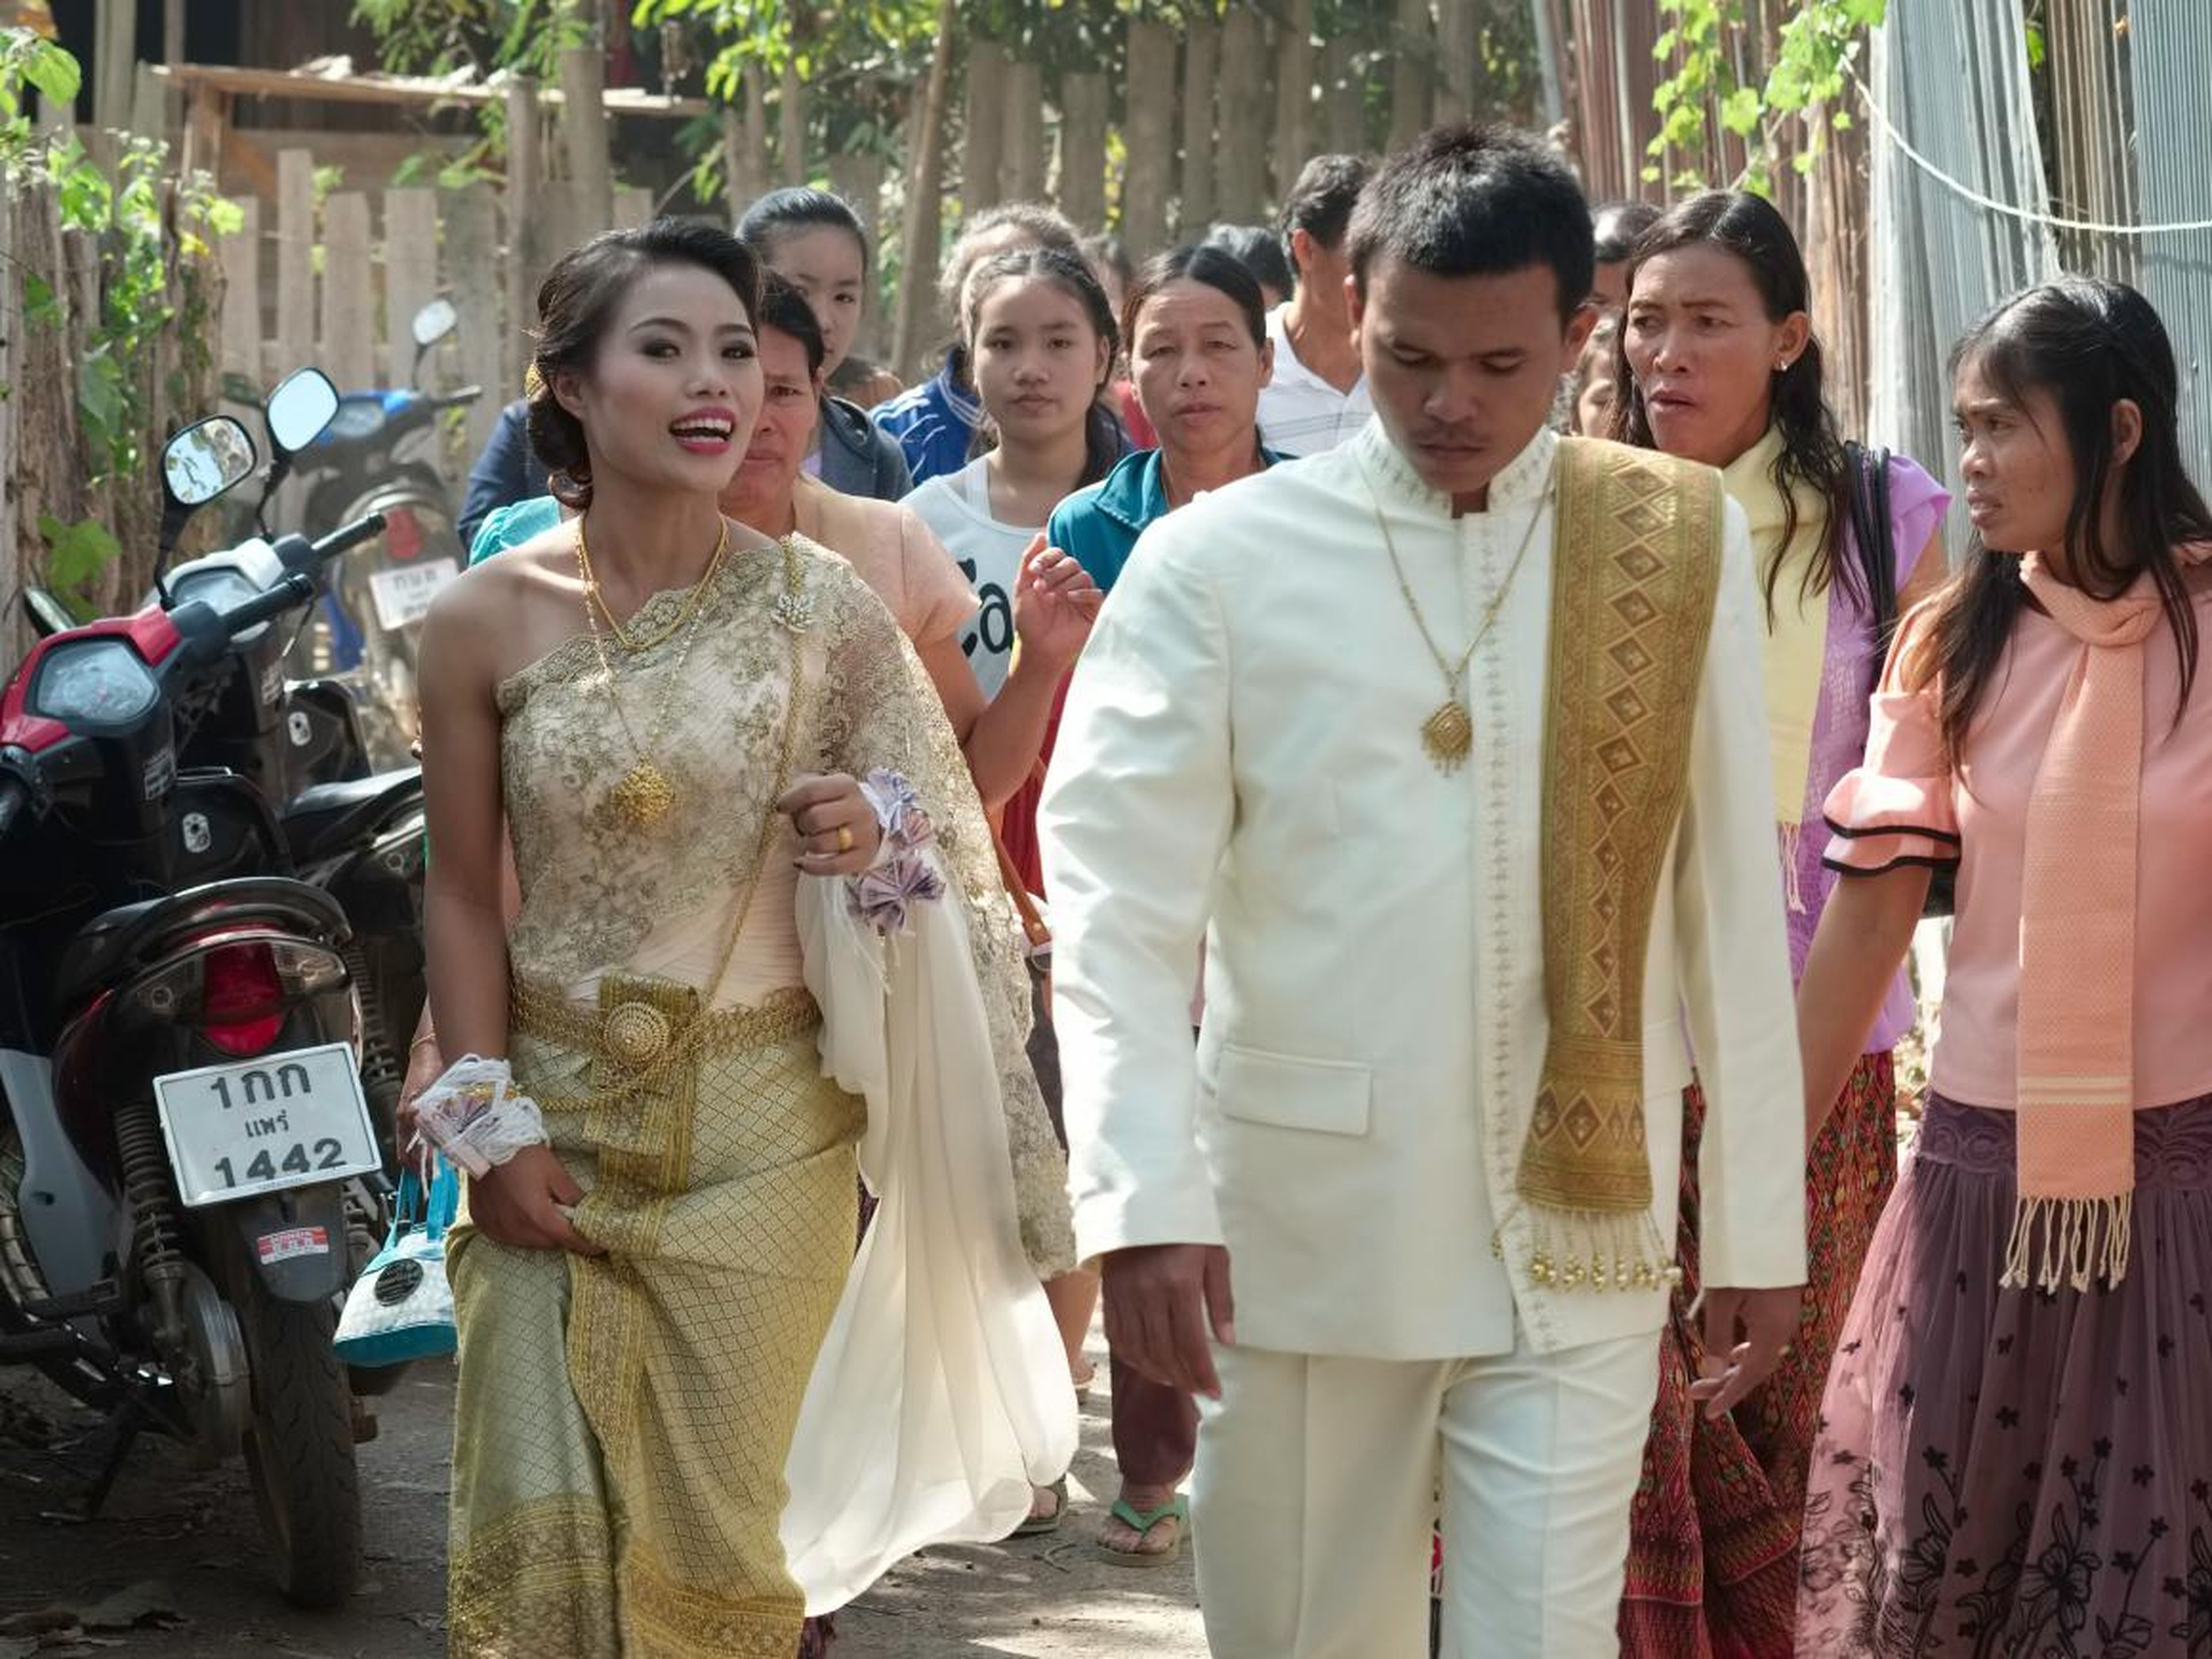 En algunas bodas tradicionales tailandesas, los novios llevan tocados a juego que se enlazan durante la ceremonia, simbolizando su unión.